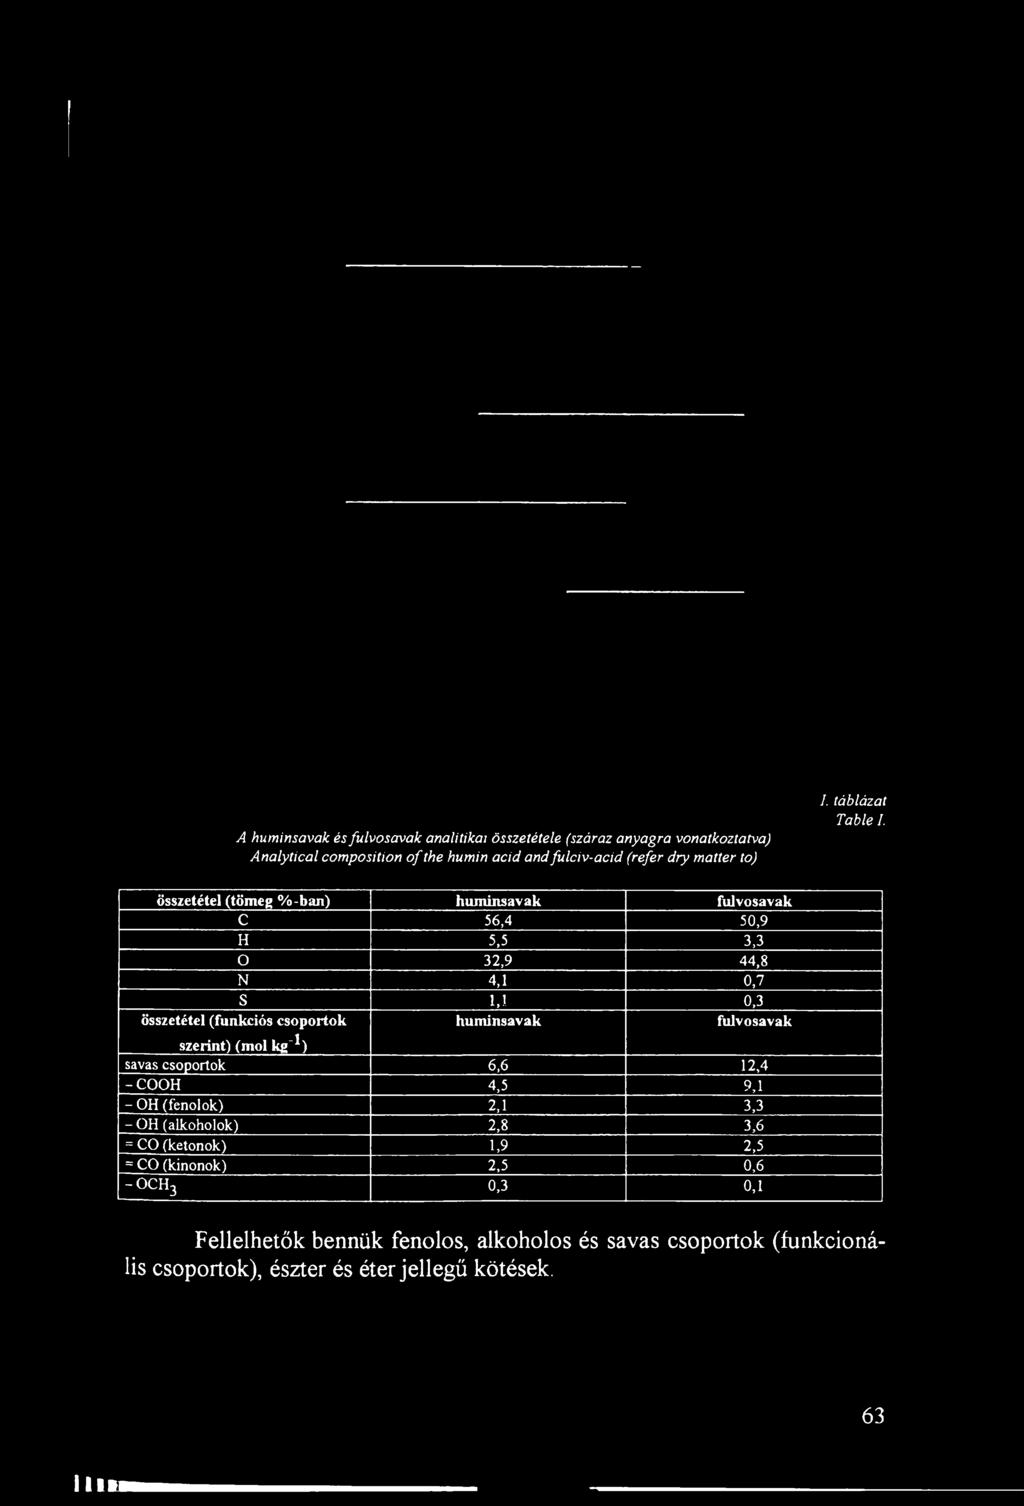 összetétel (tömeg %-ban) huminsavak fulvosavak C 56,4 50,9 H 5,5 3,3 o 32,9 44,8 N 4,1 0,7 S 1,1 0,3 összetétel (funkciós csoportok huminsavak fulvosavak